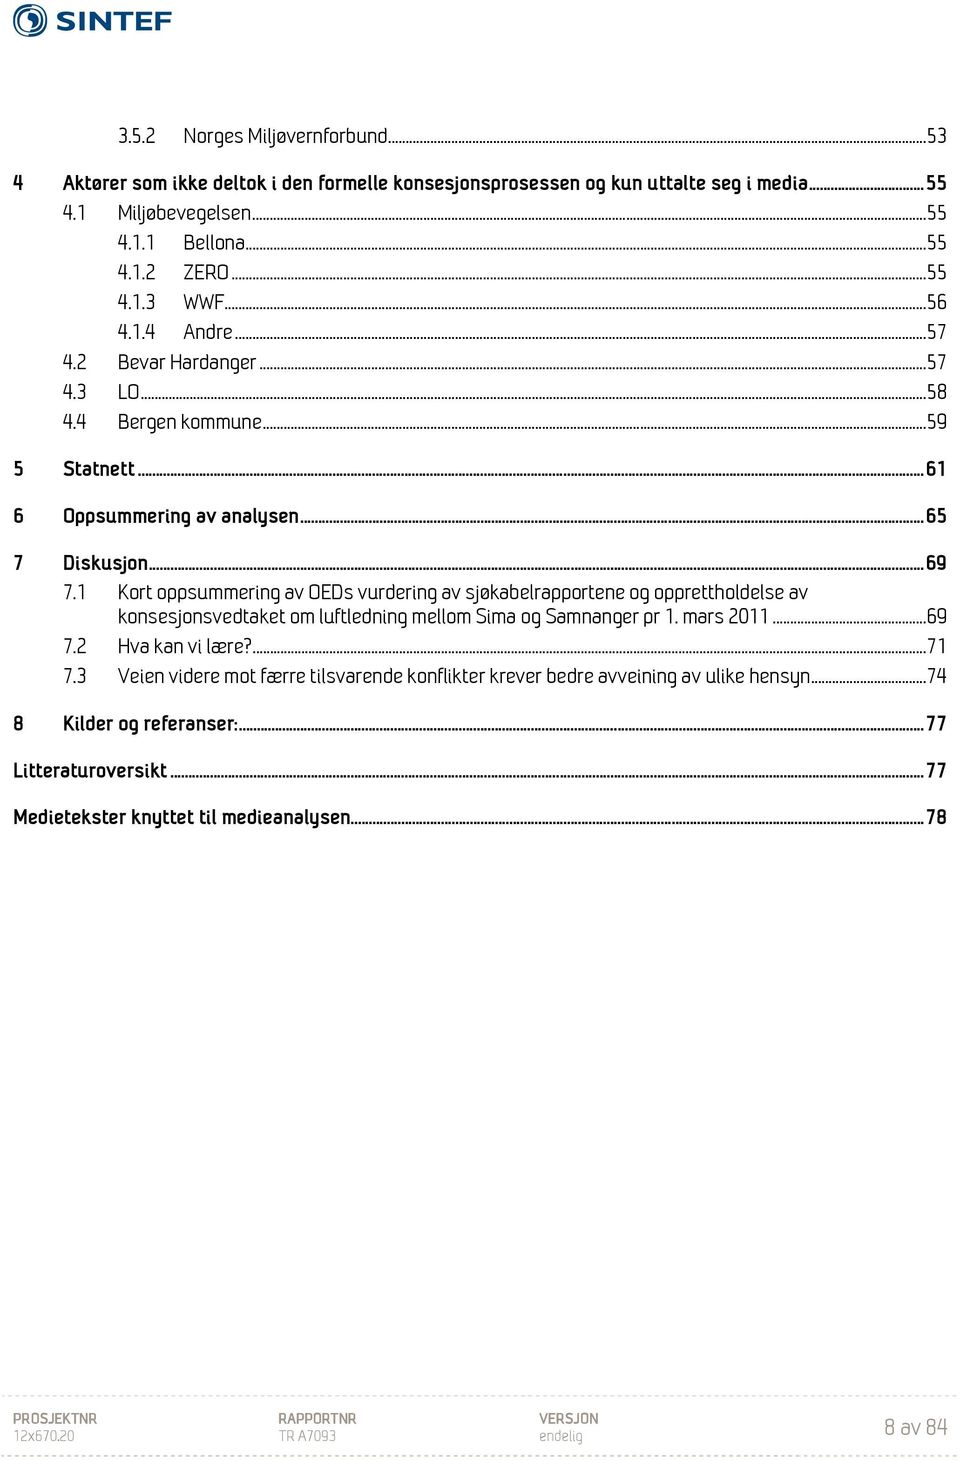 1 Kort oppsummering av OEDs vurdering av sjøkabelrapportene og opprettholdelse av konsesjonsvedtaket om luftledning mellom Sima og Samnanger pr 1. mars 2011... 69 7.2 Hva kan vi lære?... 71 7.